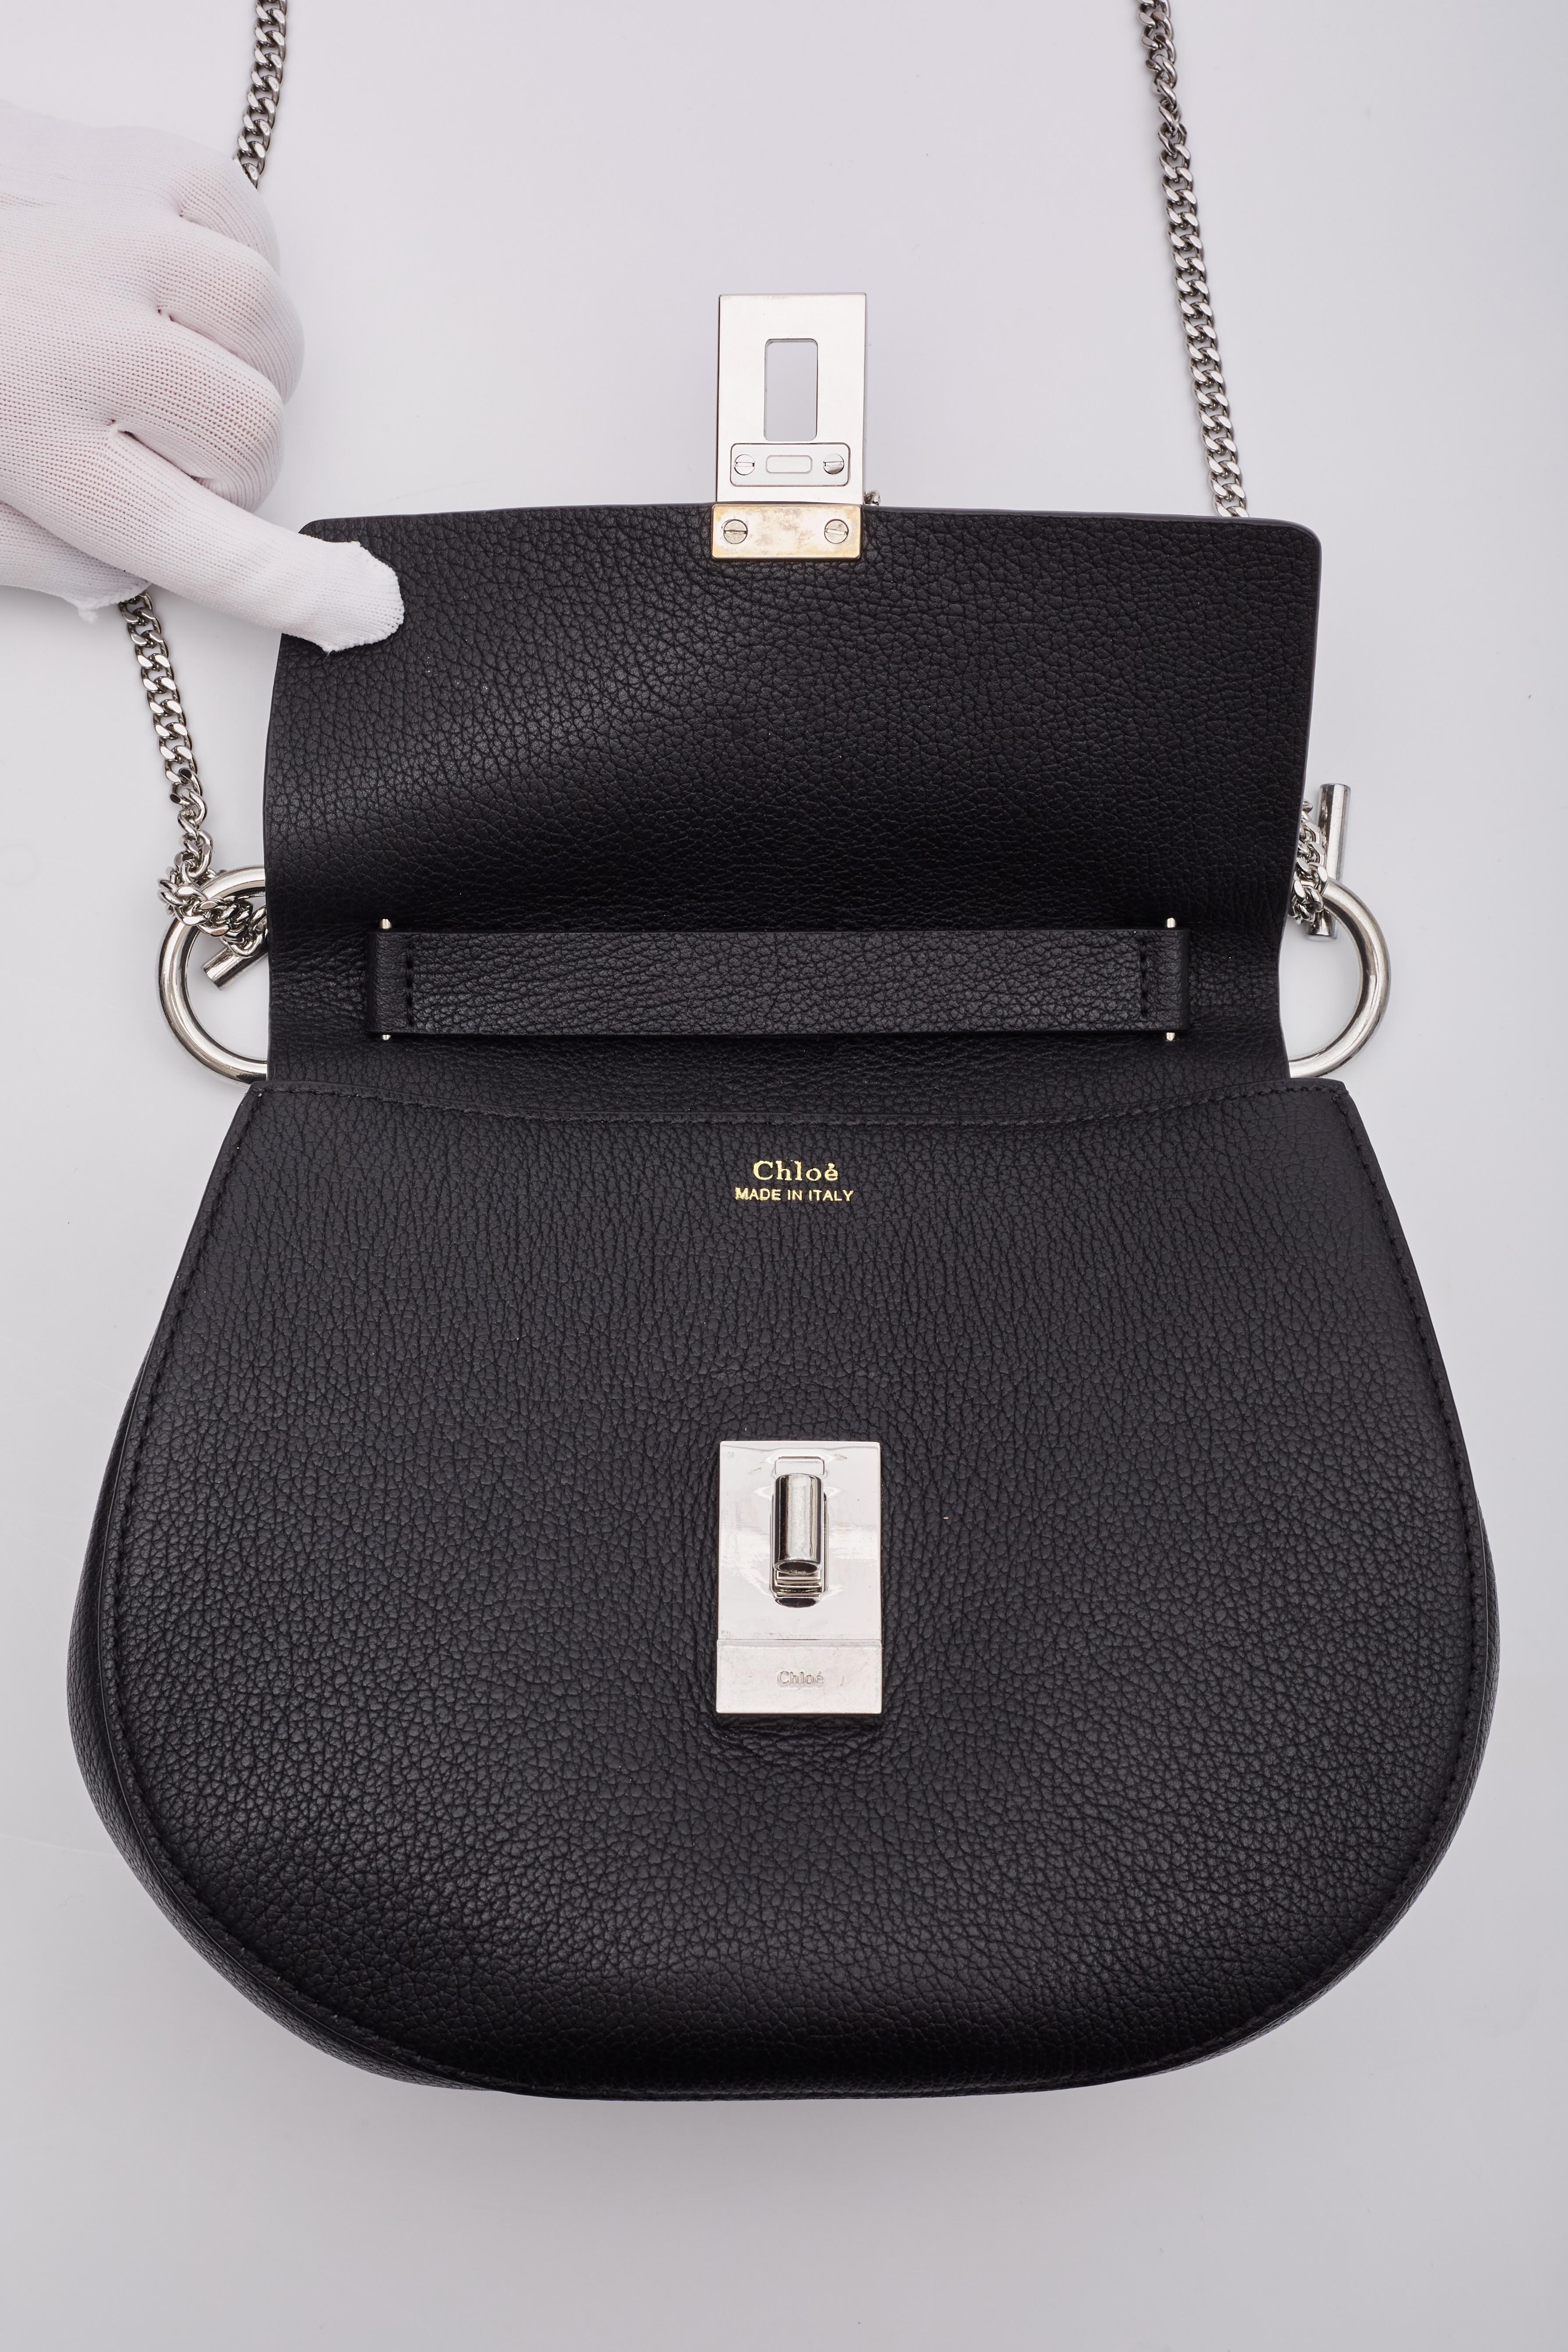 Chloe Grained Calfskin Drew Shoulder Bag Black For Sale 5